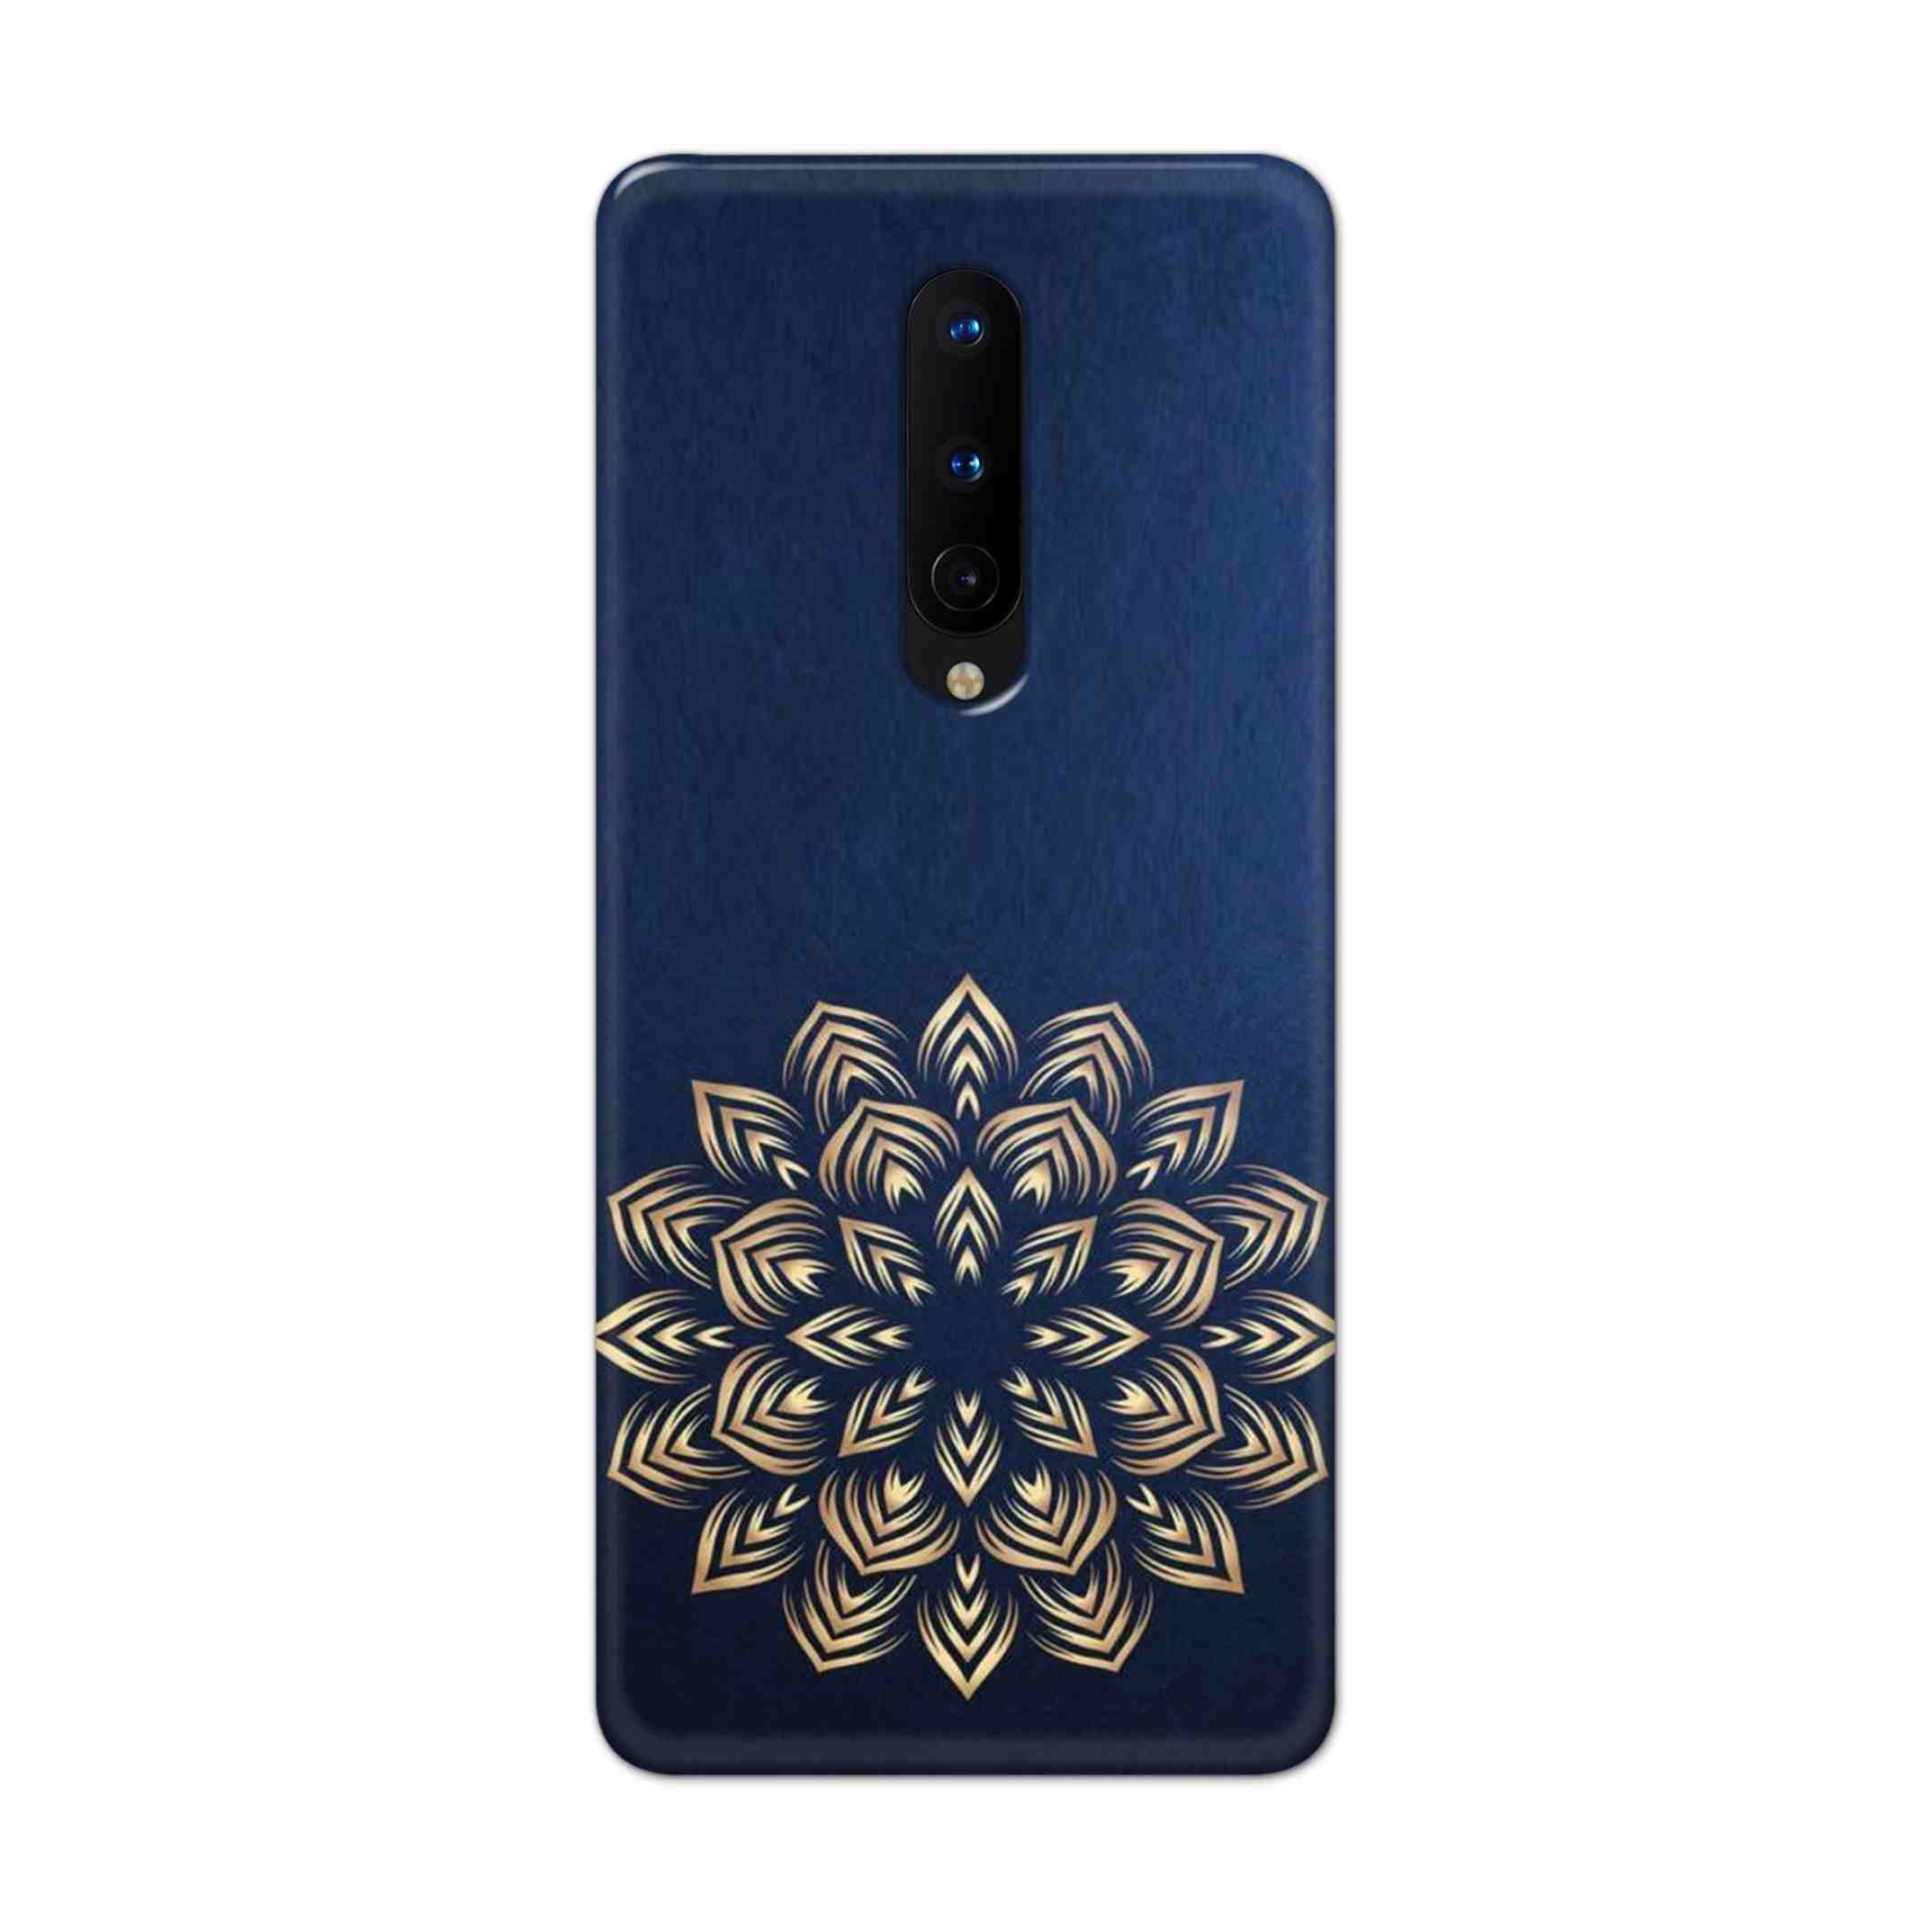 Buy Heart Mandala Hard Back Mobile Phone Case Cover For OnePlus 8 Online